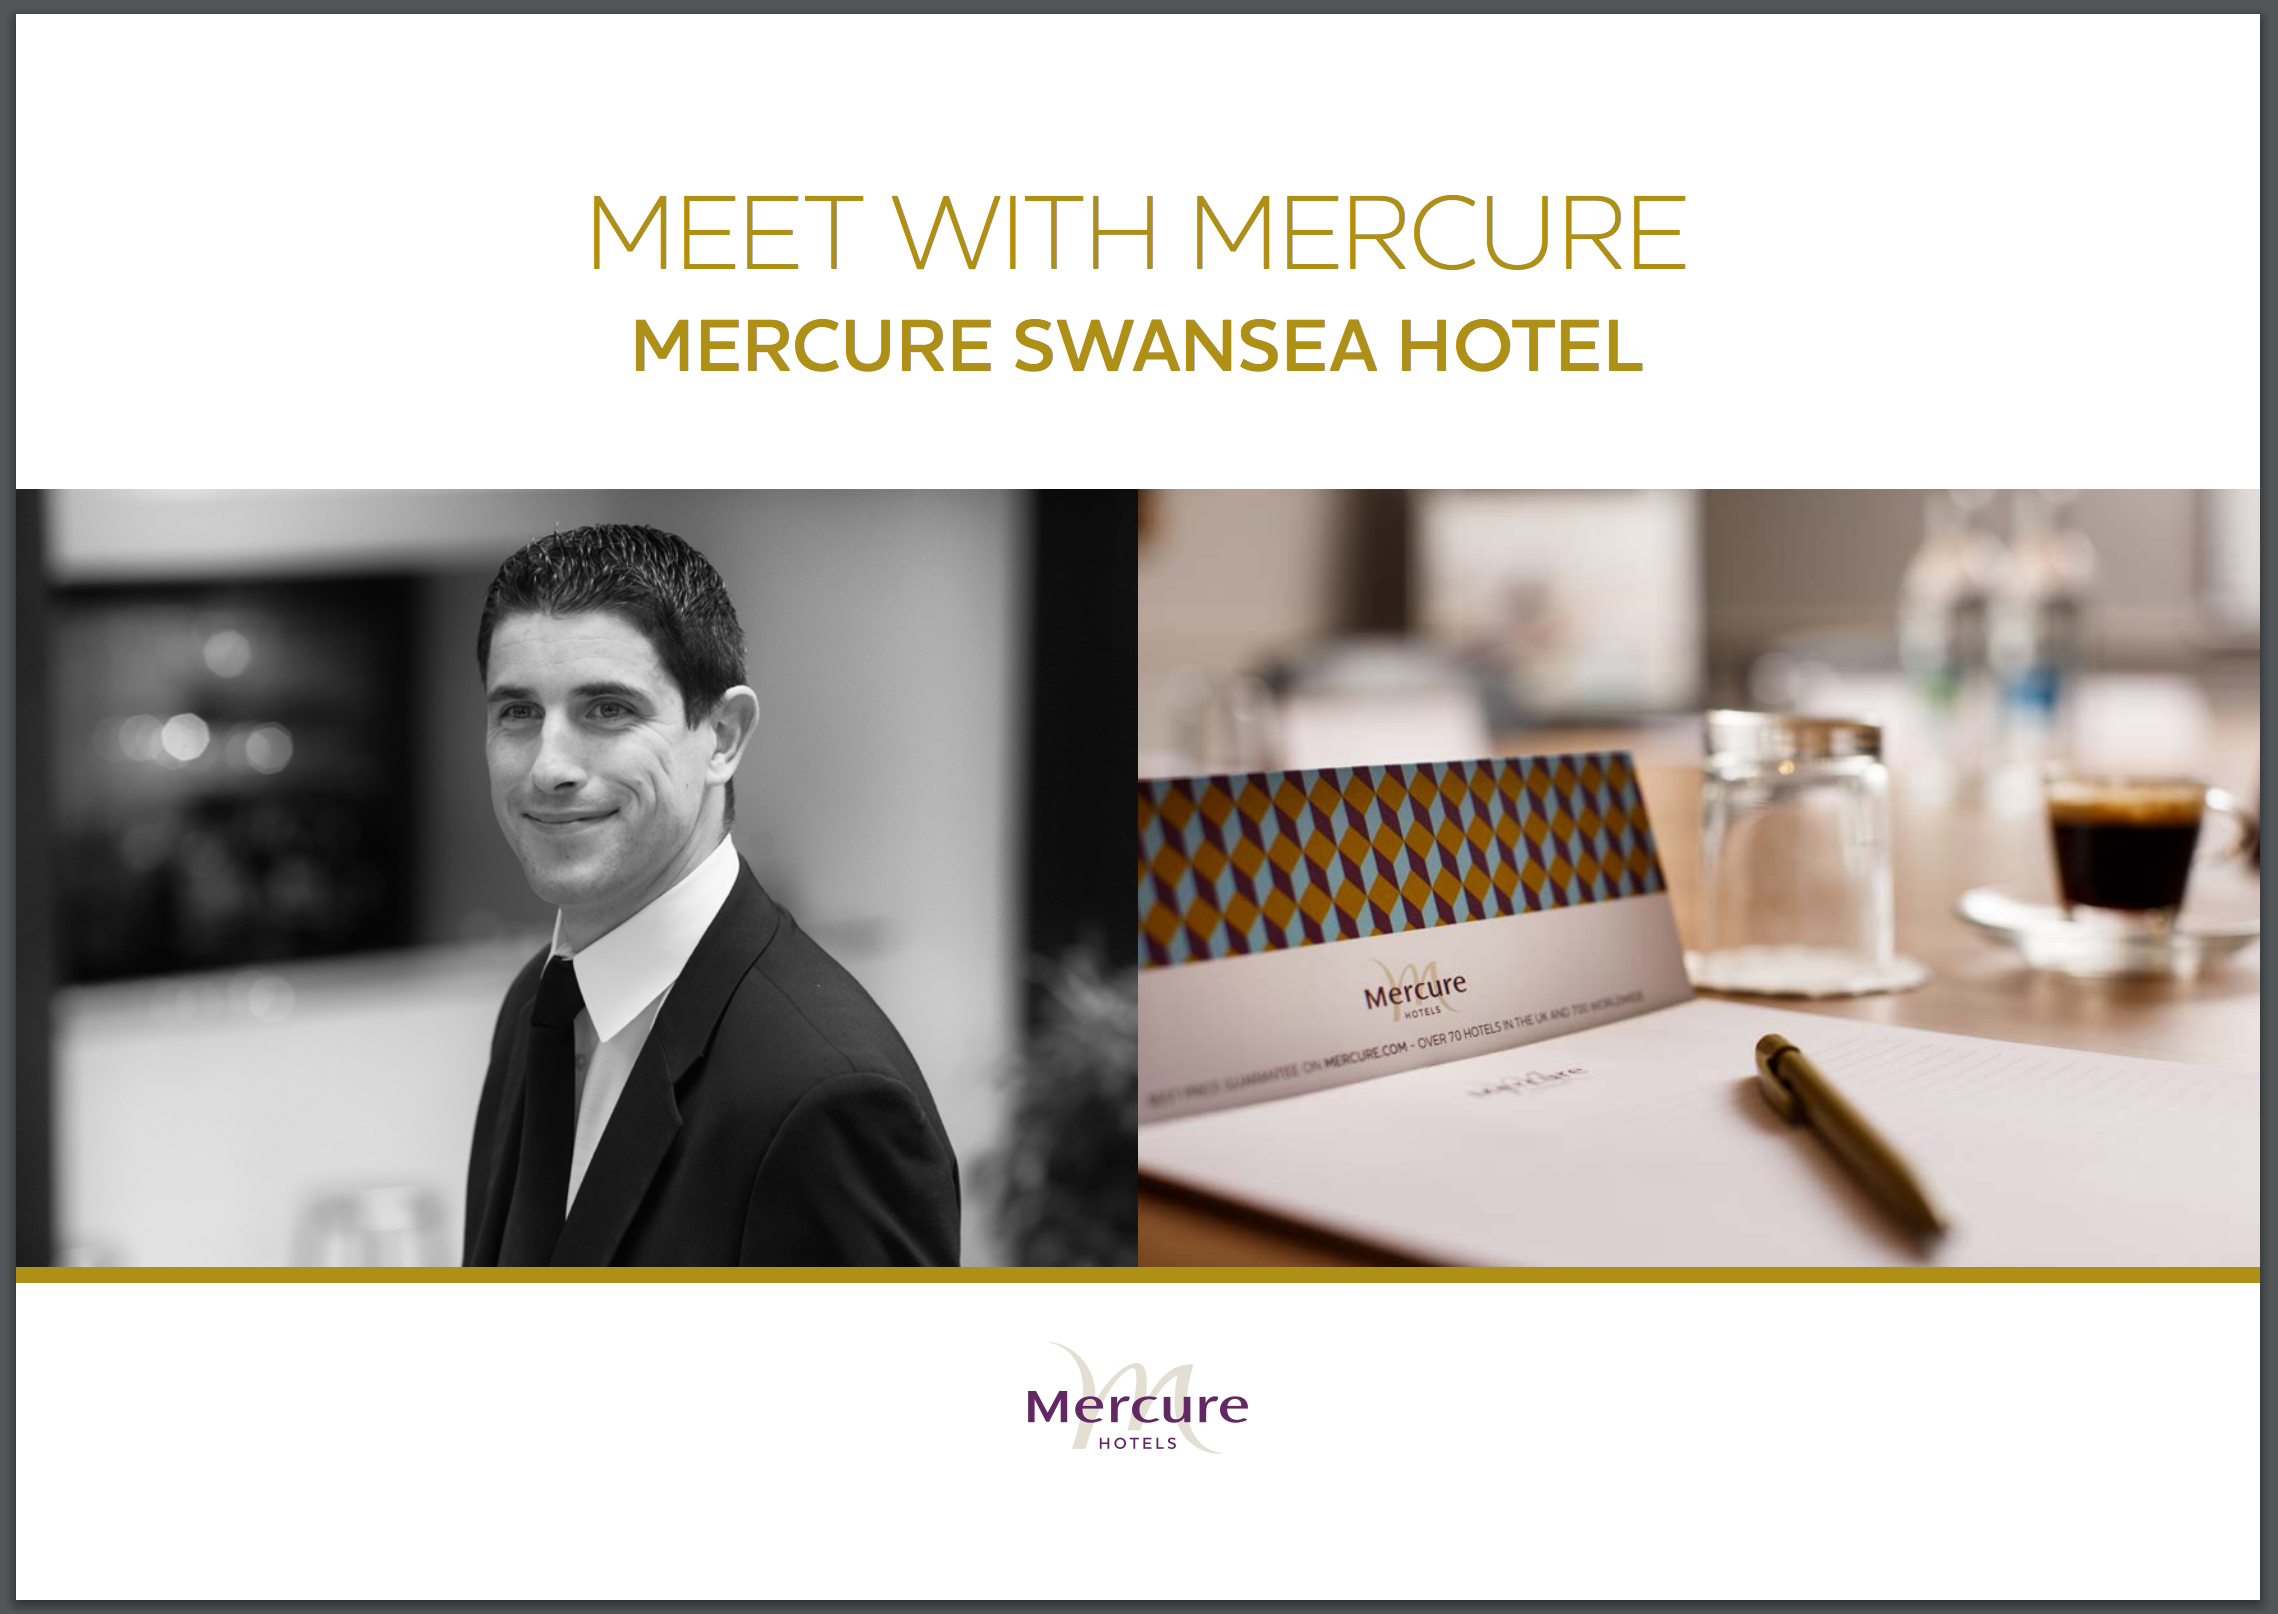 Mercure Swansea Hotel Meetings Brochure Cover